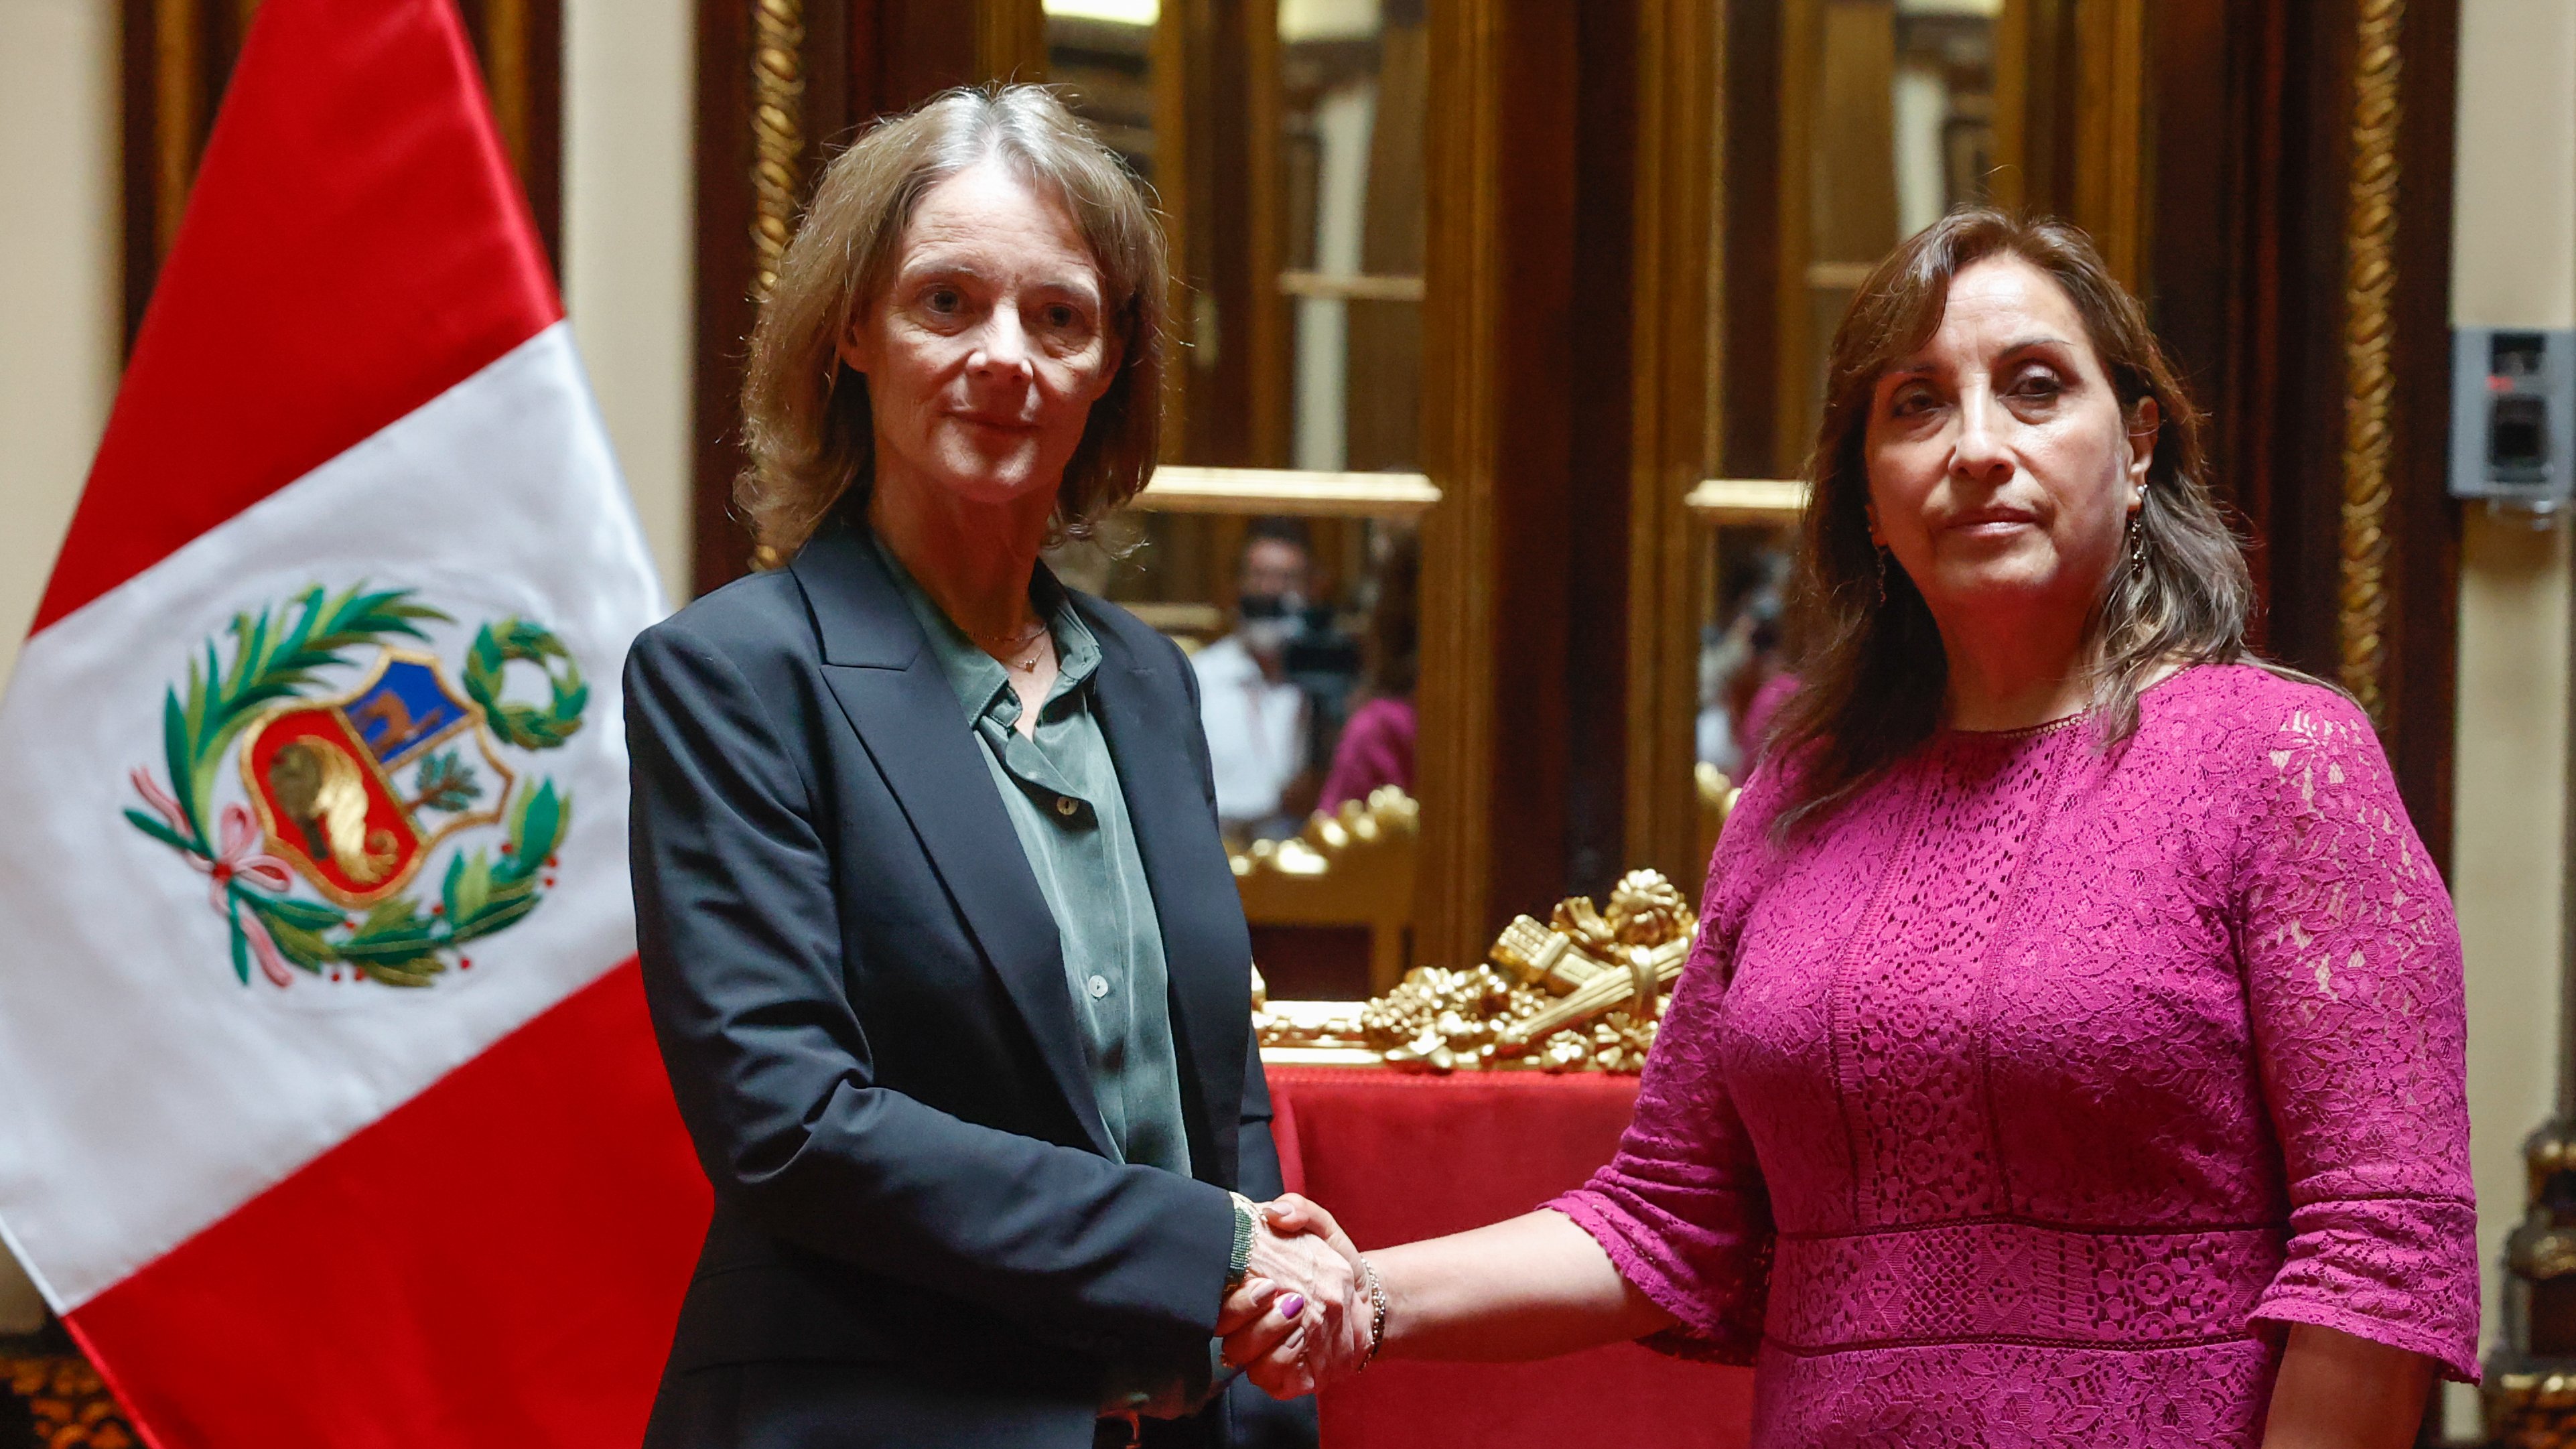 Visita de embajadora de EE.UU. a presidenta de Perú es antidiplomática: AMLO